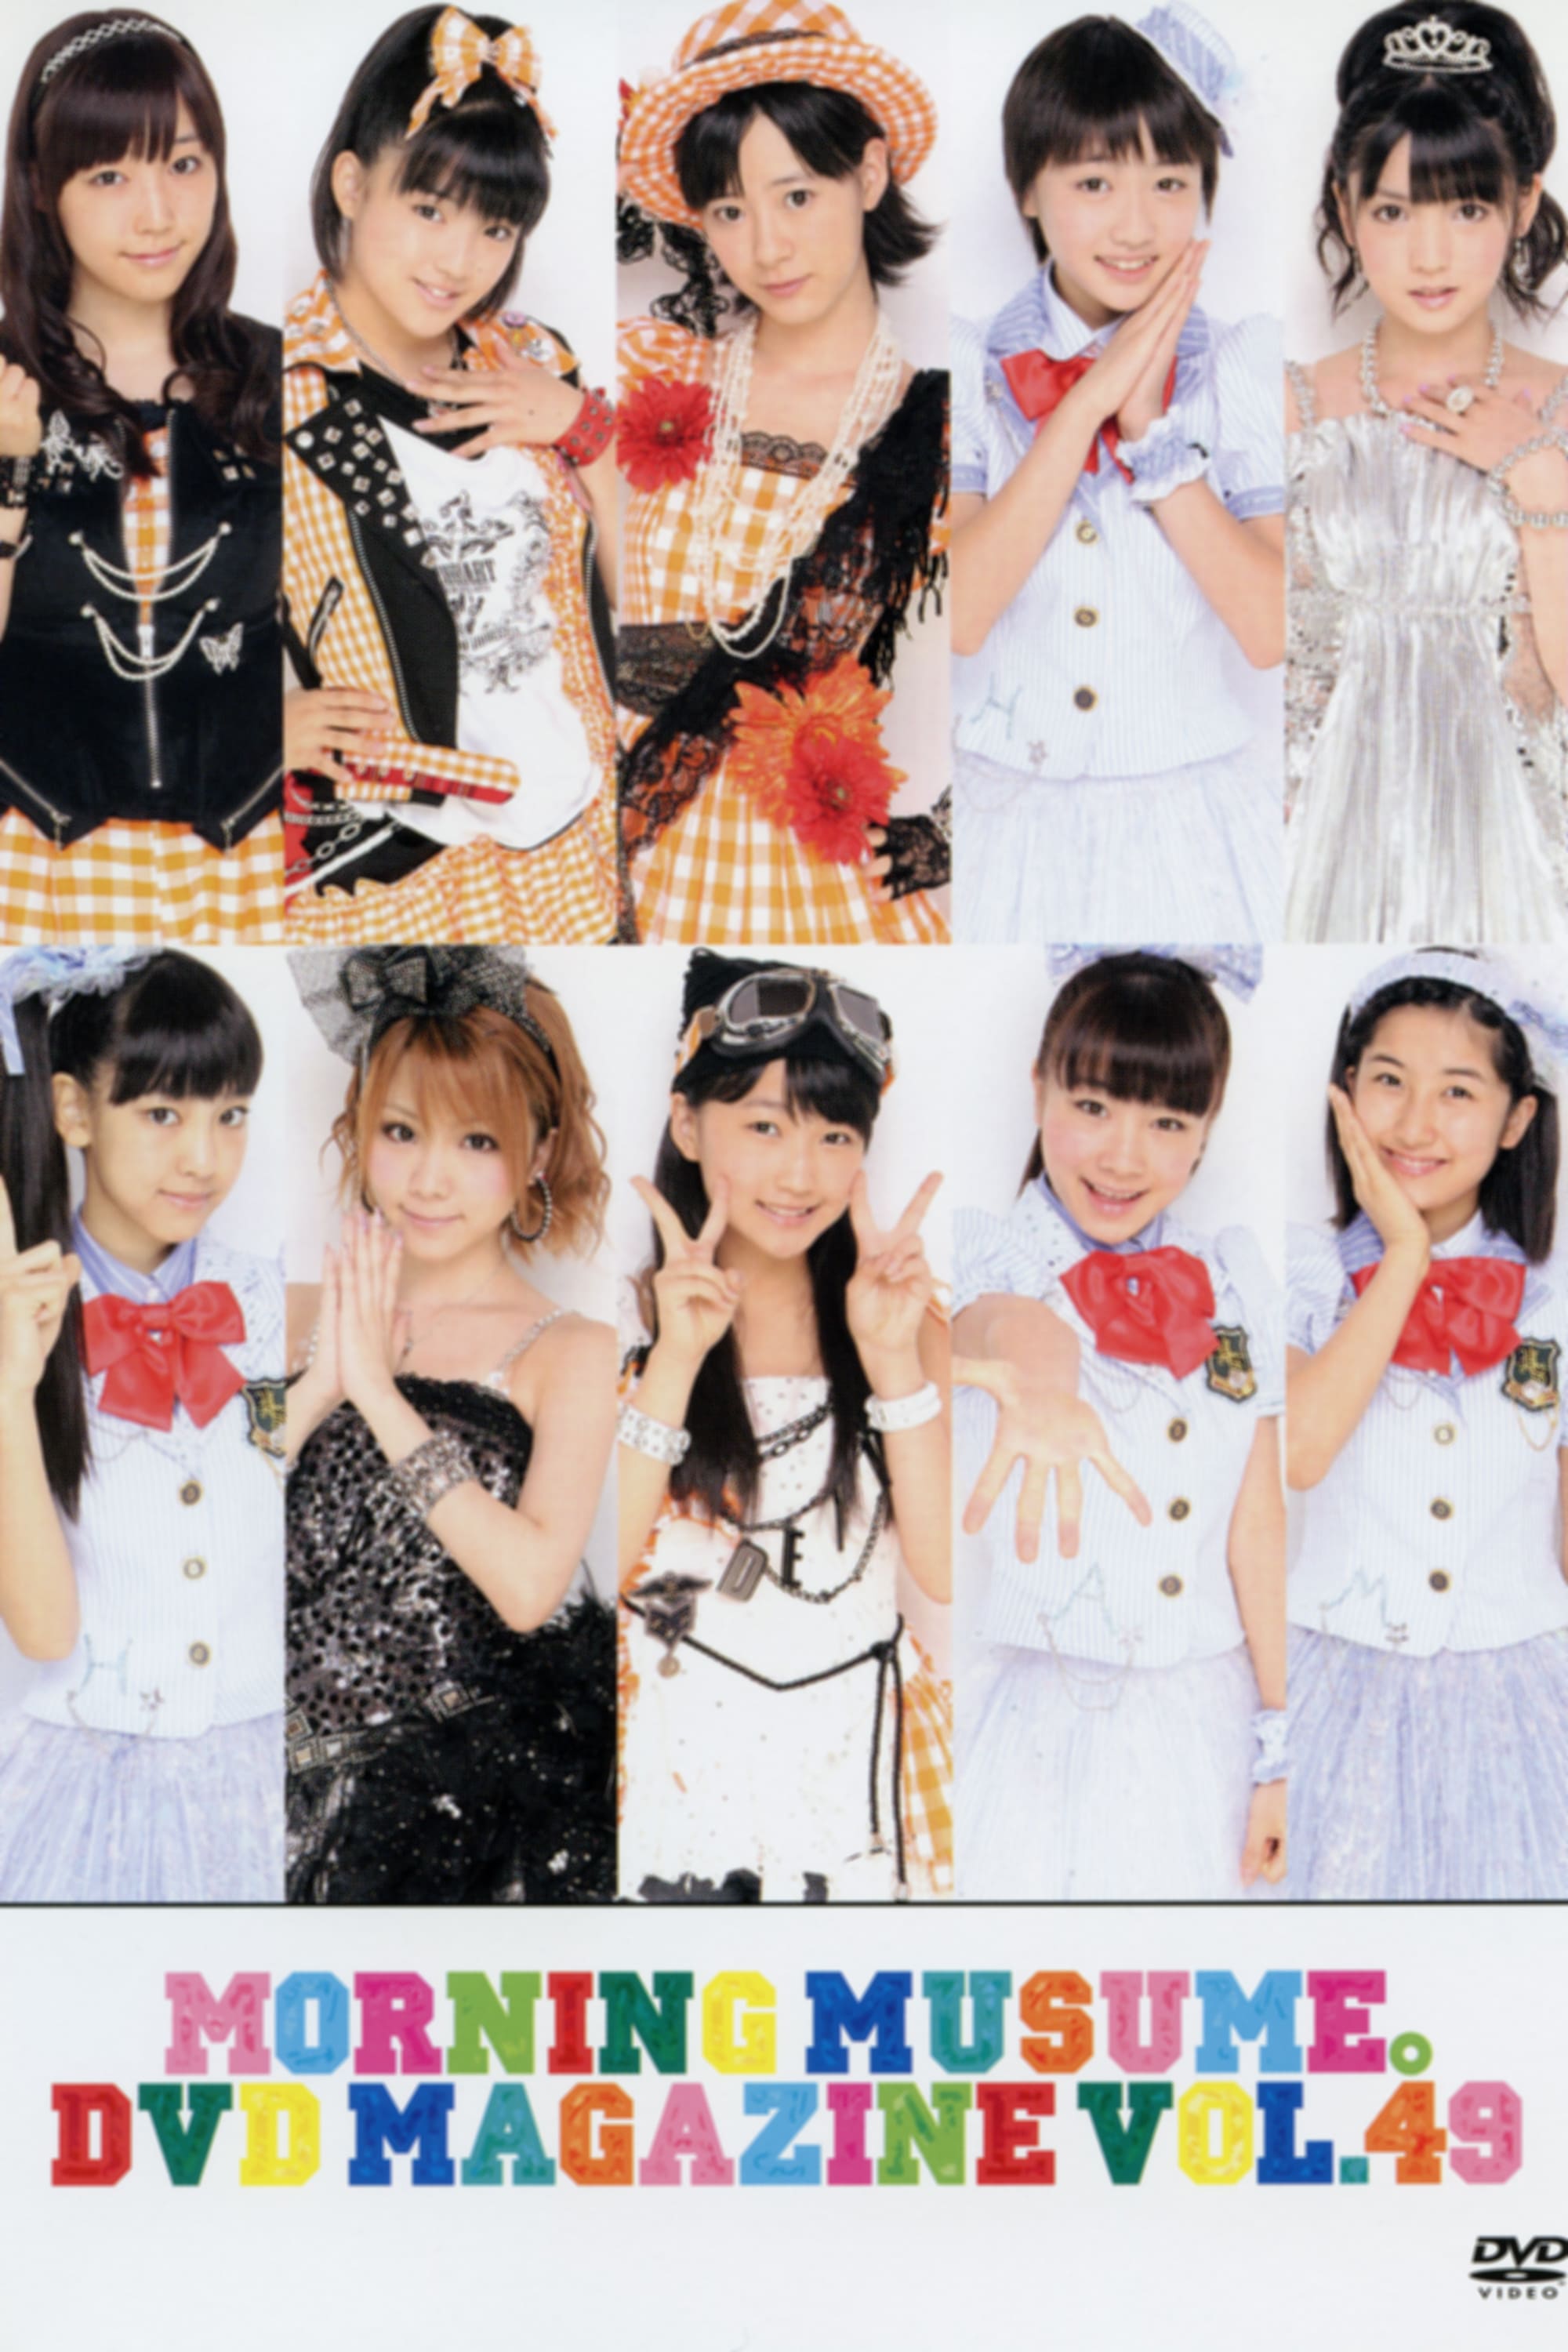 Morning Musume. DVD Magazine Vol.49